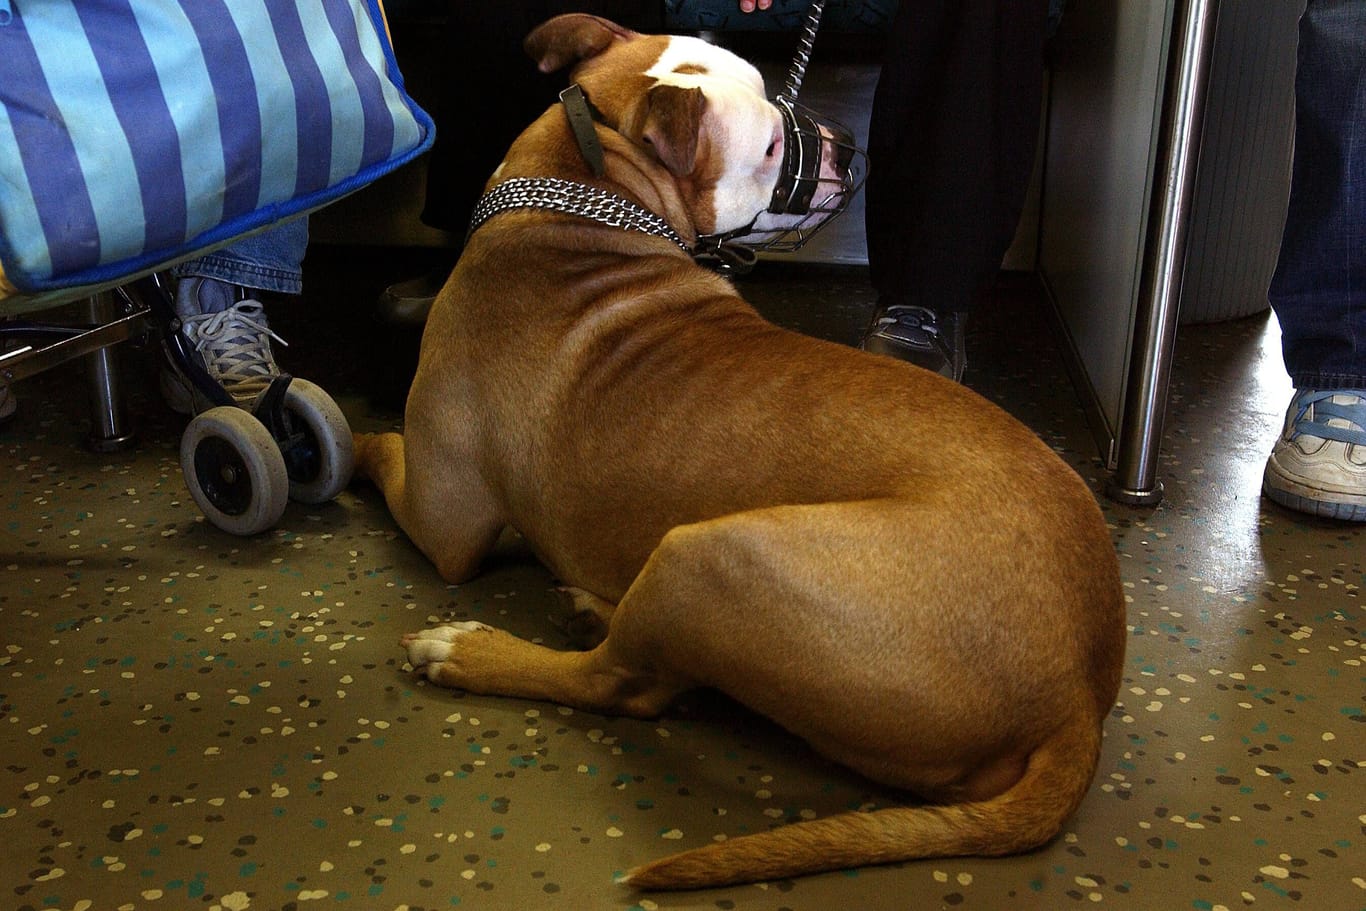 Ein Hund in einem Berliner S-Bahn-Waggon